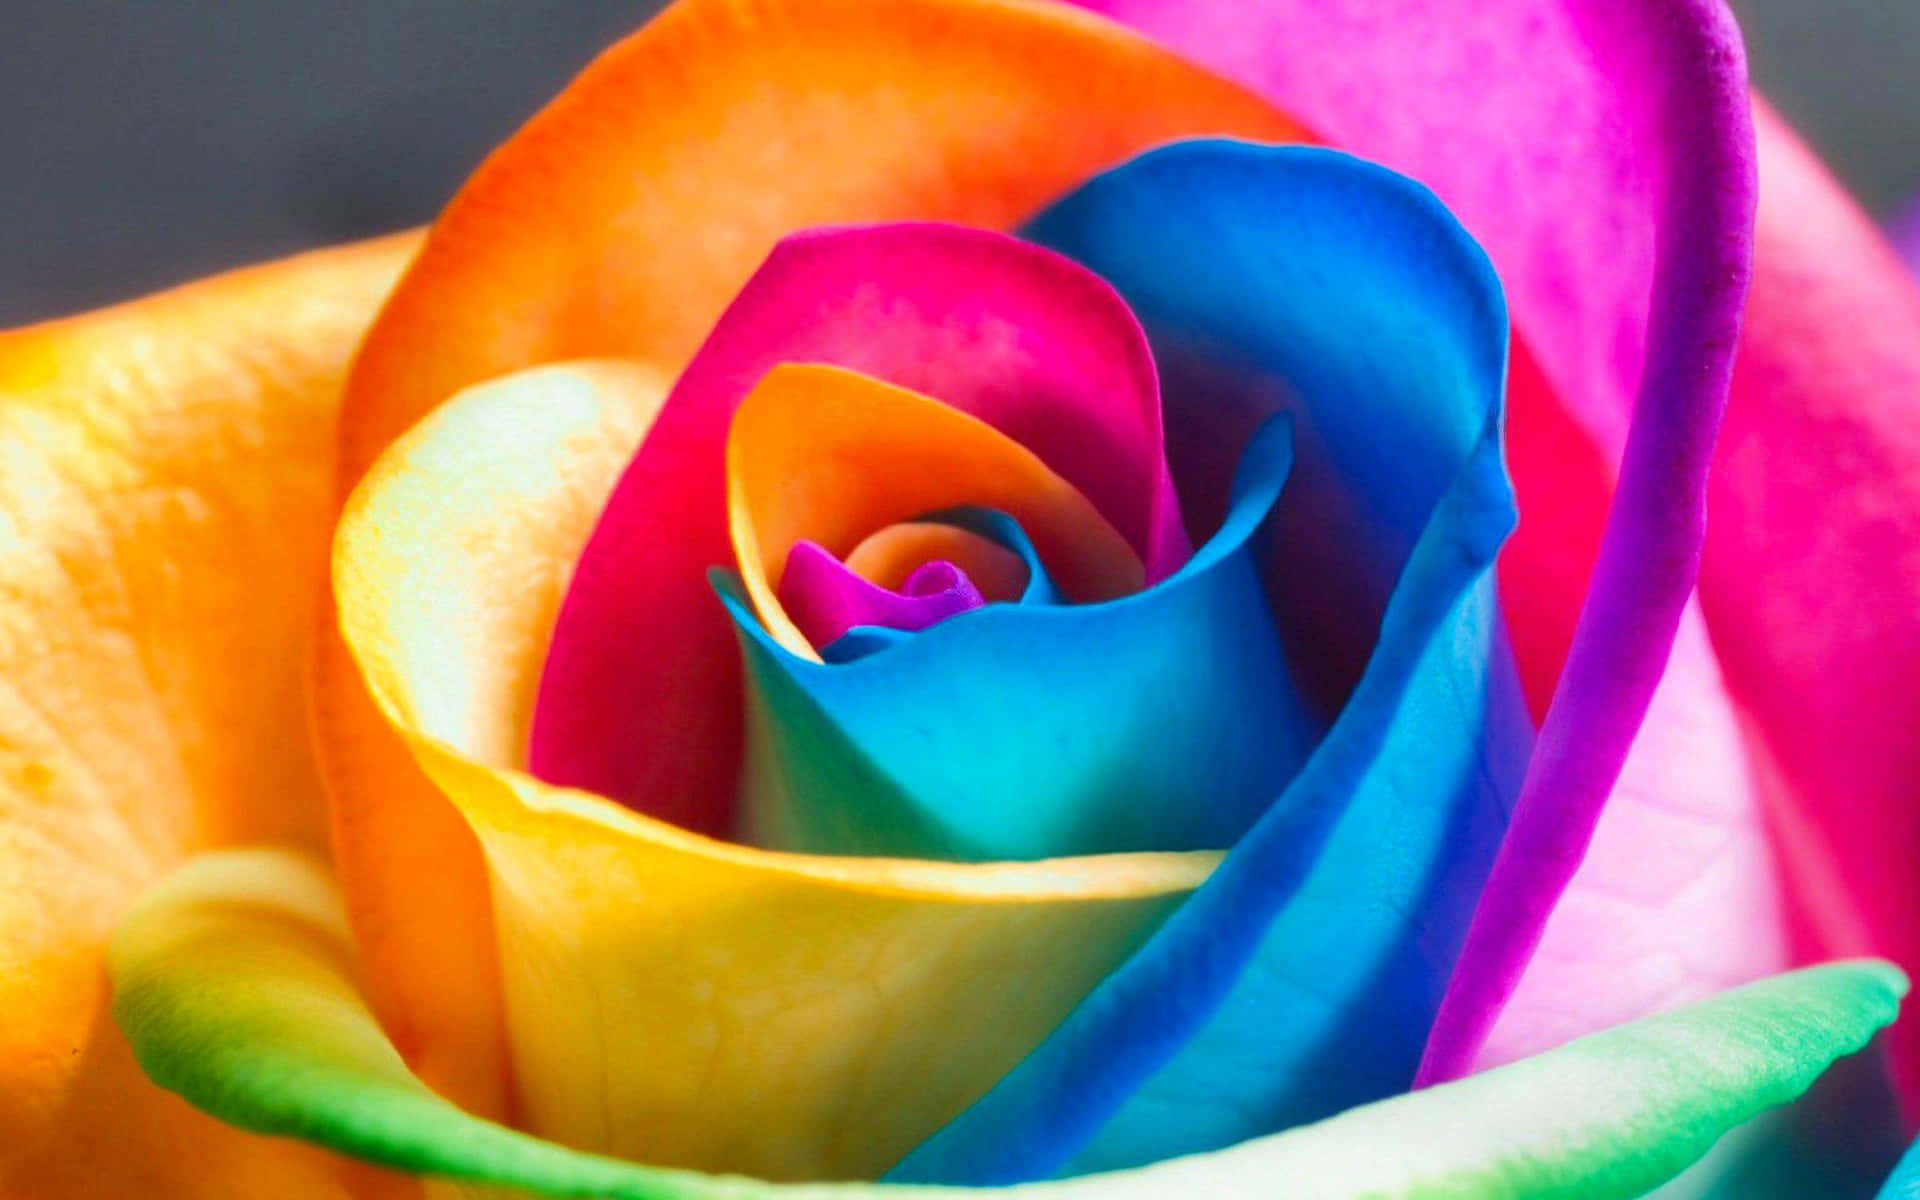 En smuk rose i fuld blomst, perfekt til enhver have eller buket. Wallpaper